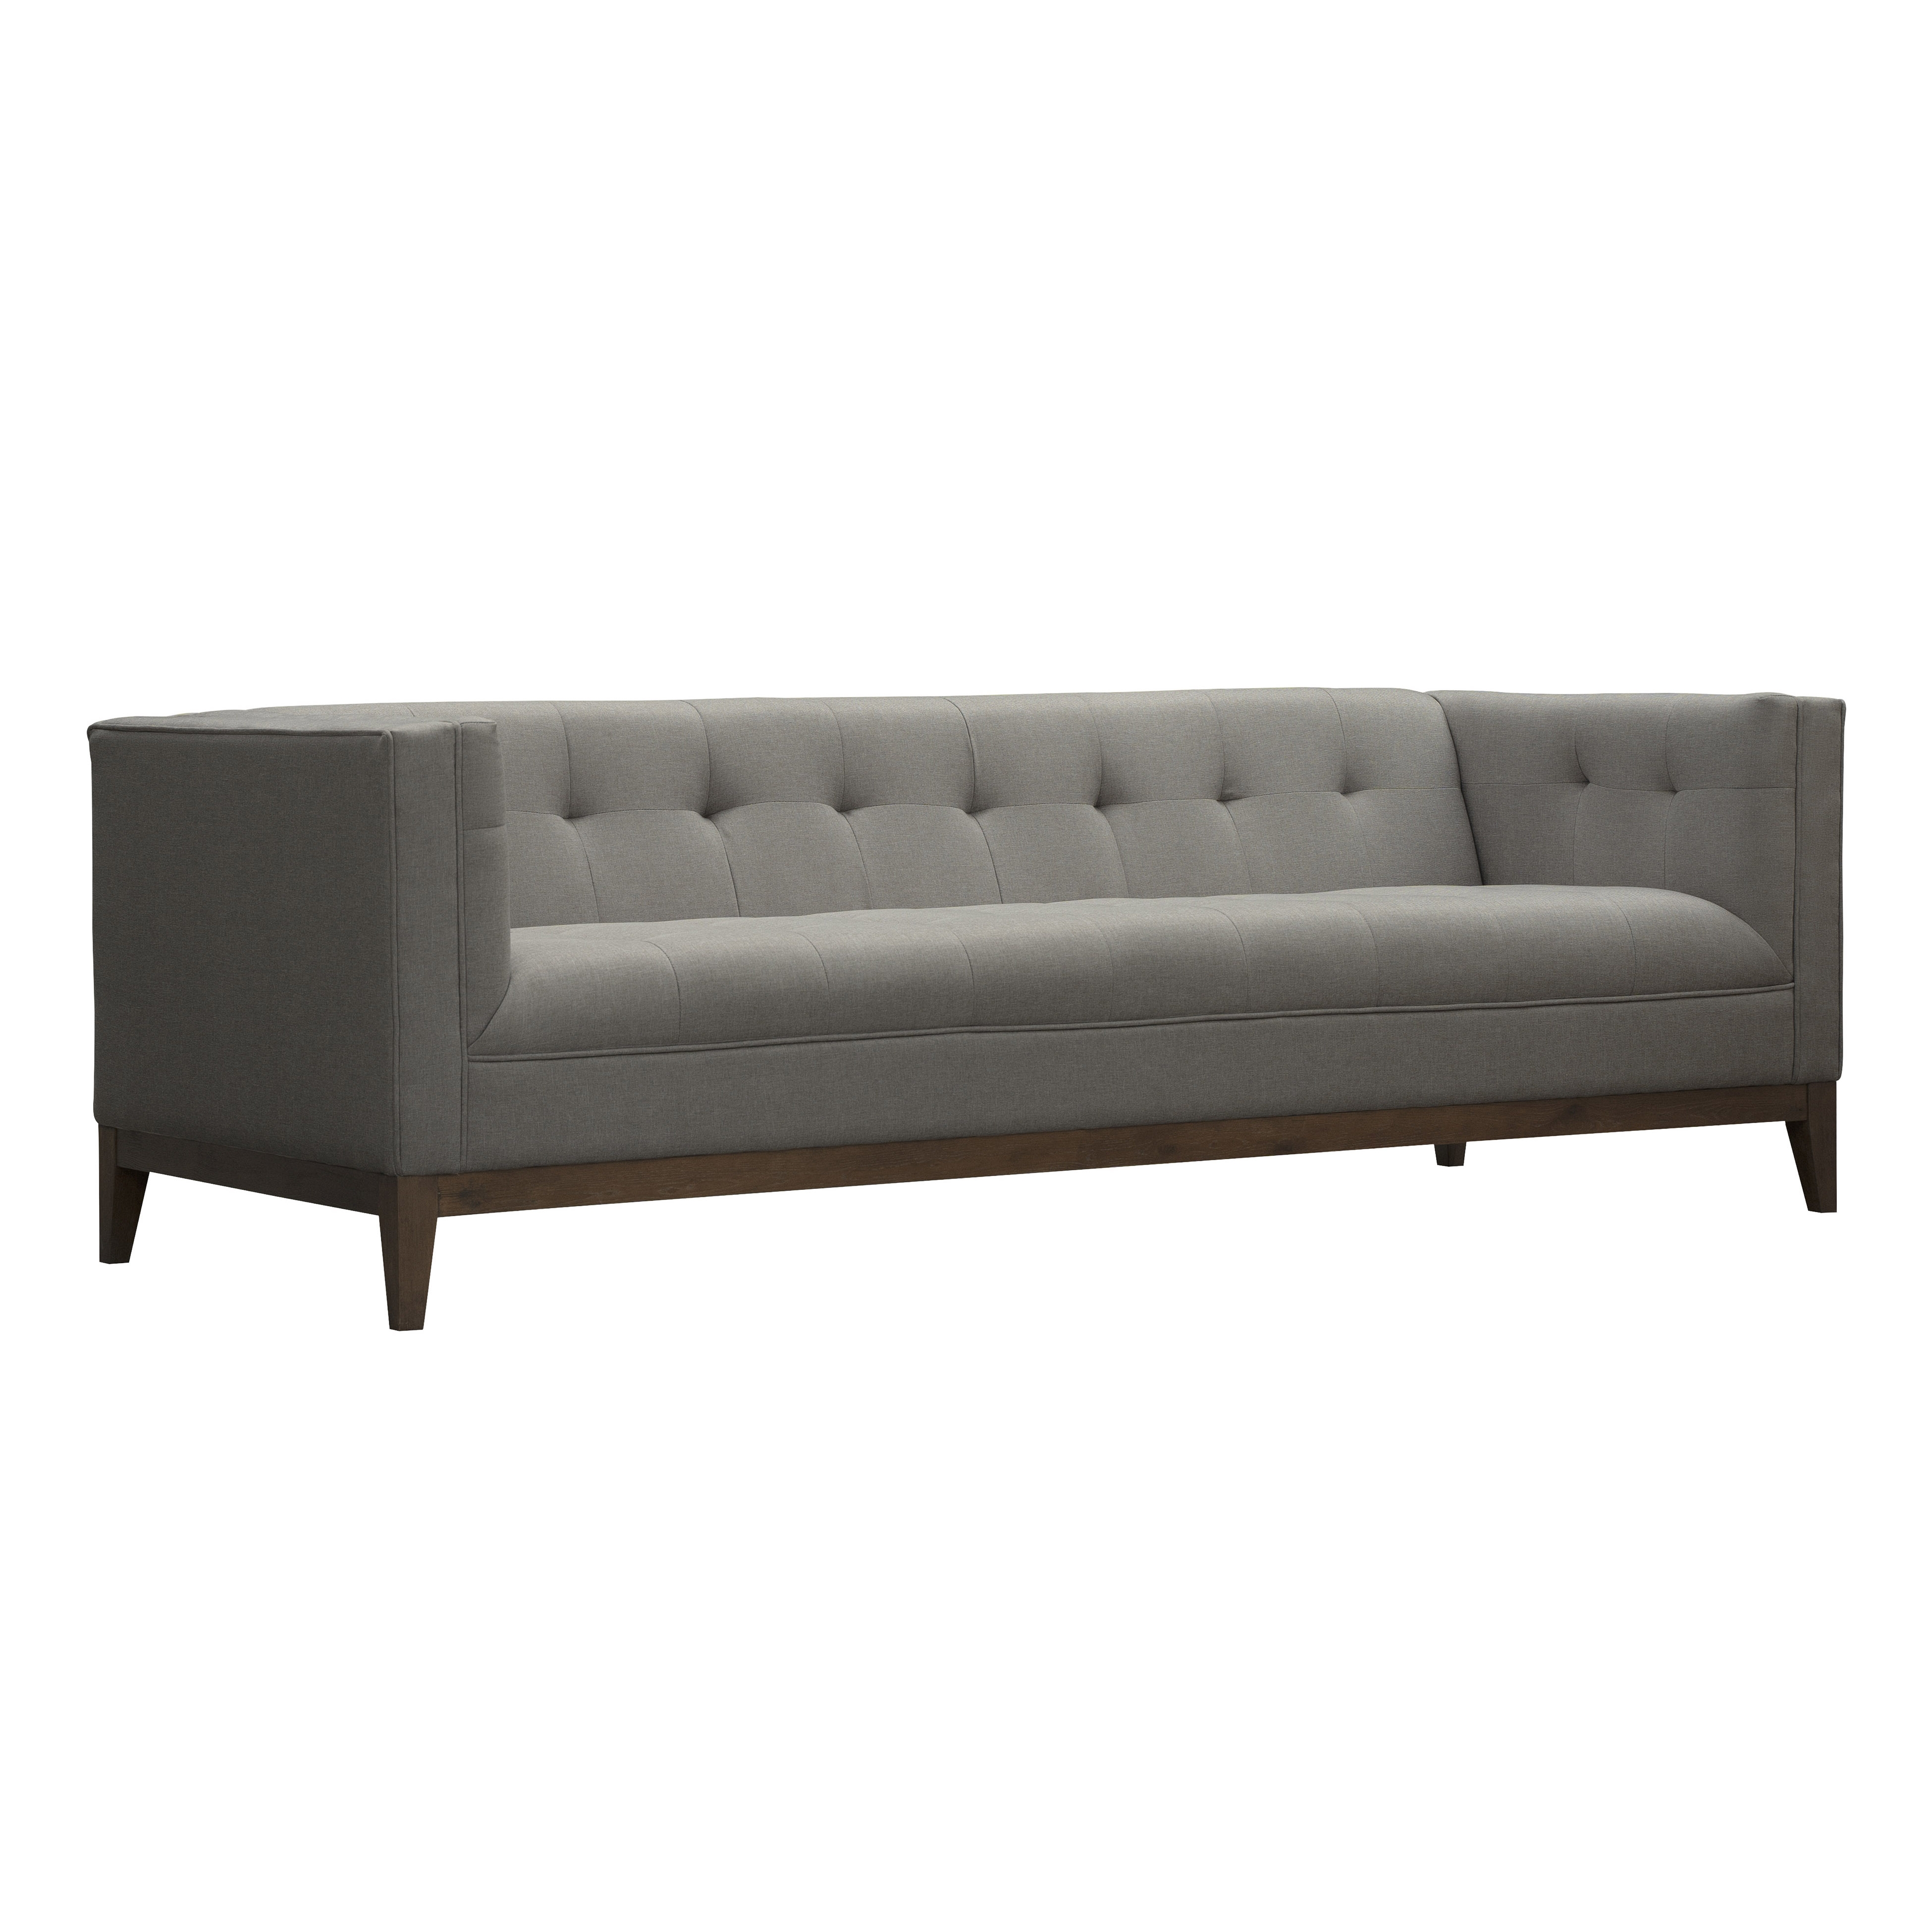 Trinnette Linen Sofa, Gray - Image 0